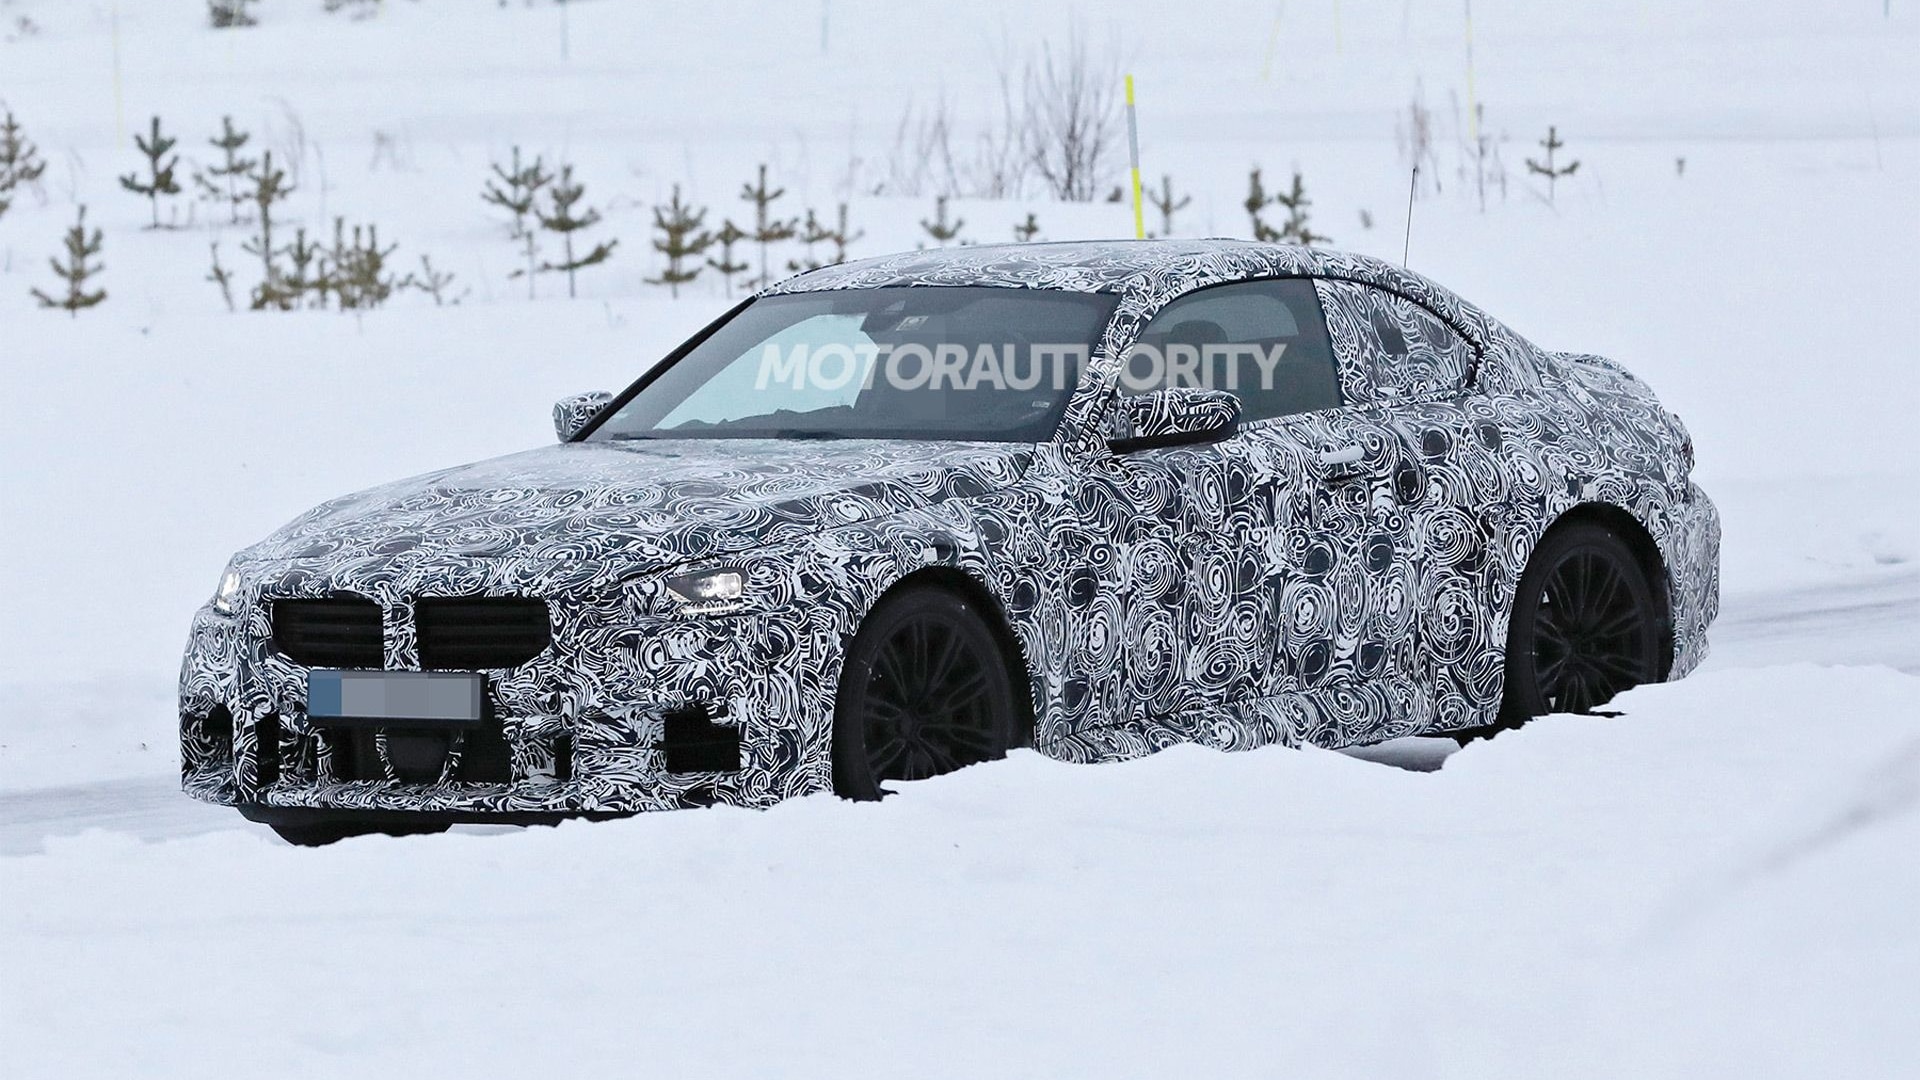 2023 BMW M2 spy shots - Photo credit: S. Baldauf/SB-Medien